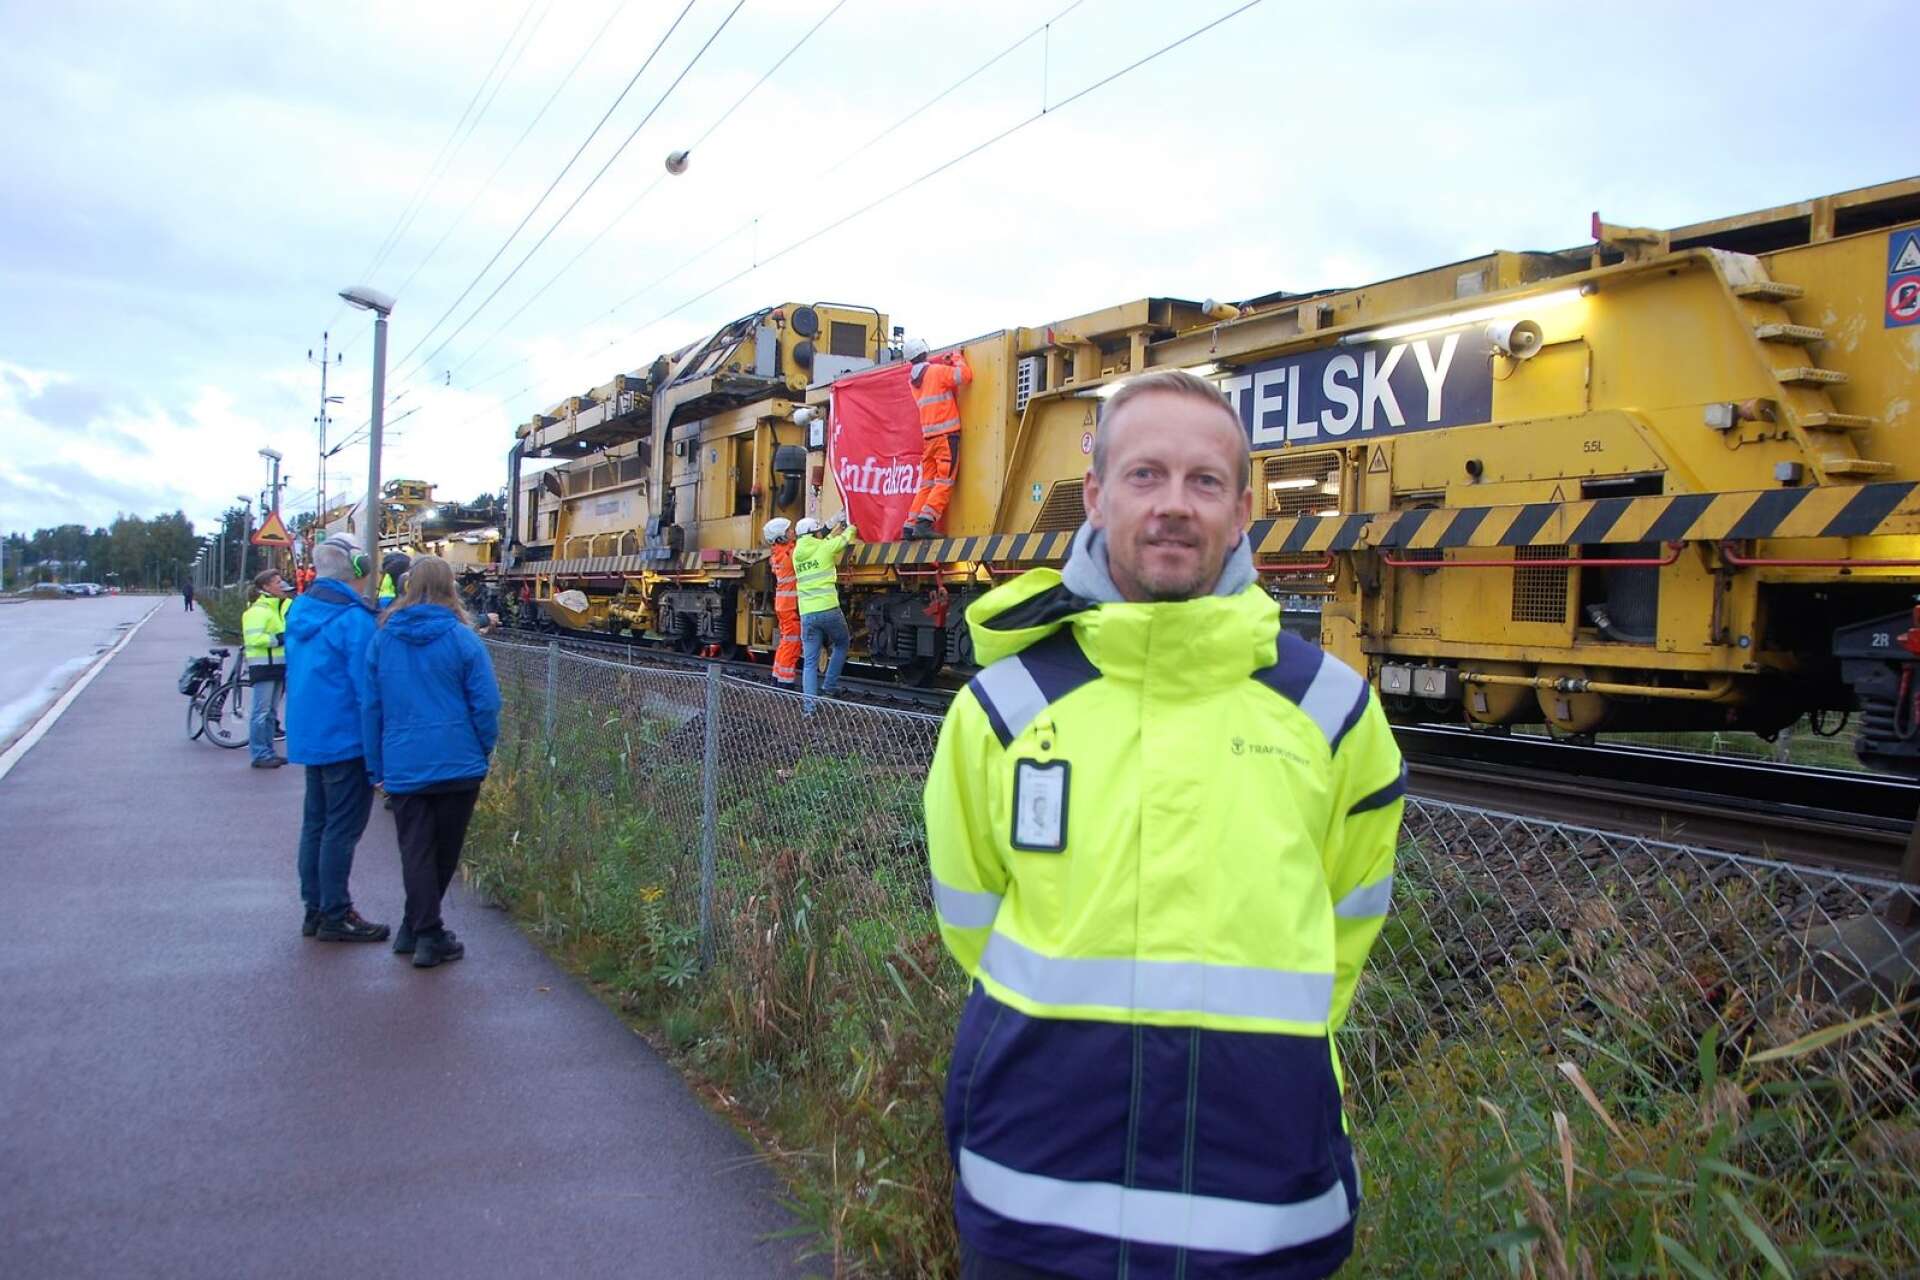 Jörgen Olofsson, Trafikverkets projektledare. Här på en bild tillsammans med den jättemaskin som bytte järnvägsspåren mellan Karlstad och Kil.